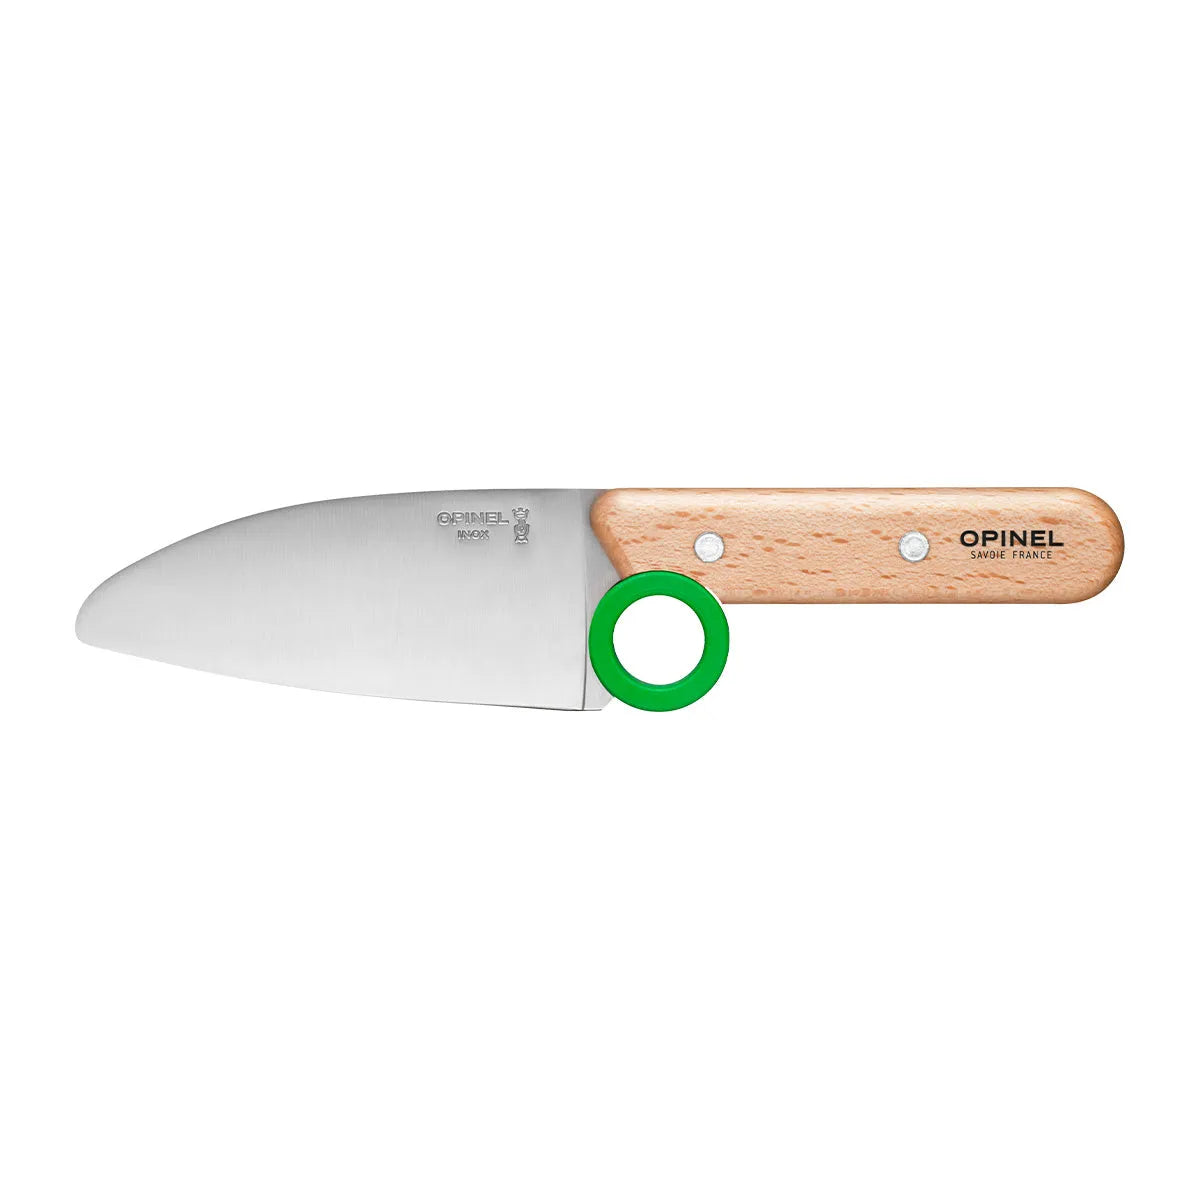 Opinel - Coffret Le Petit Chef (couteau+protège doigt+éplucheur) - vert    - Opinel - Couteau de cuisine - 